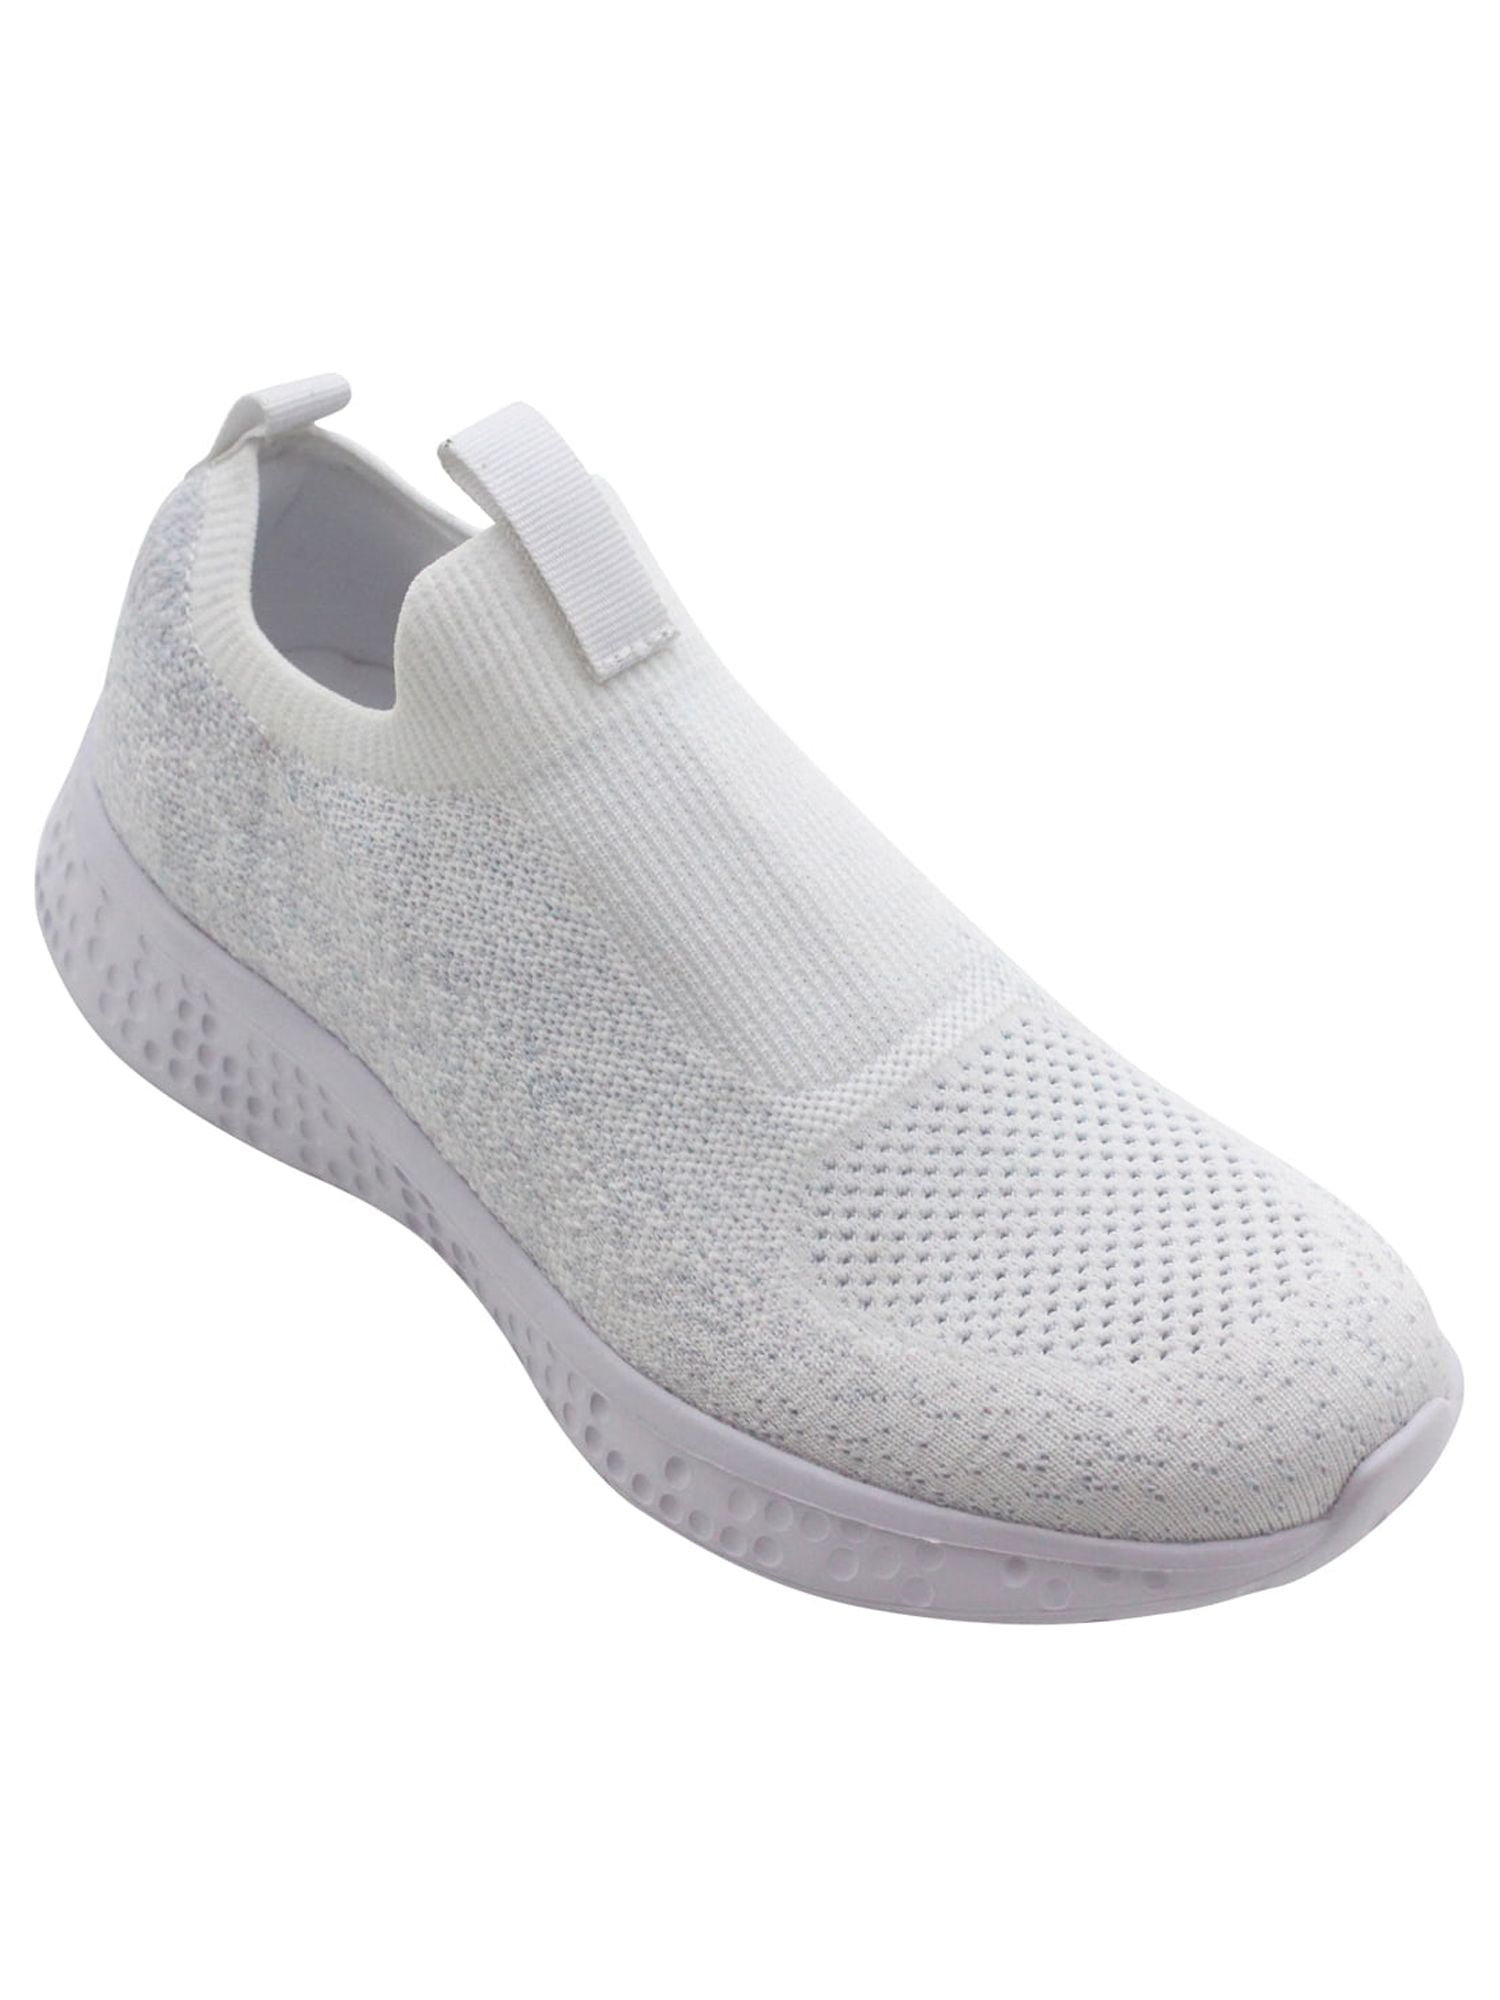 Avia Women's Slip On Sneaker (Wide Width Available) - Walmart.com